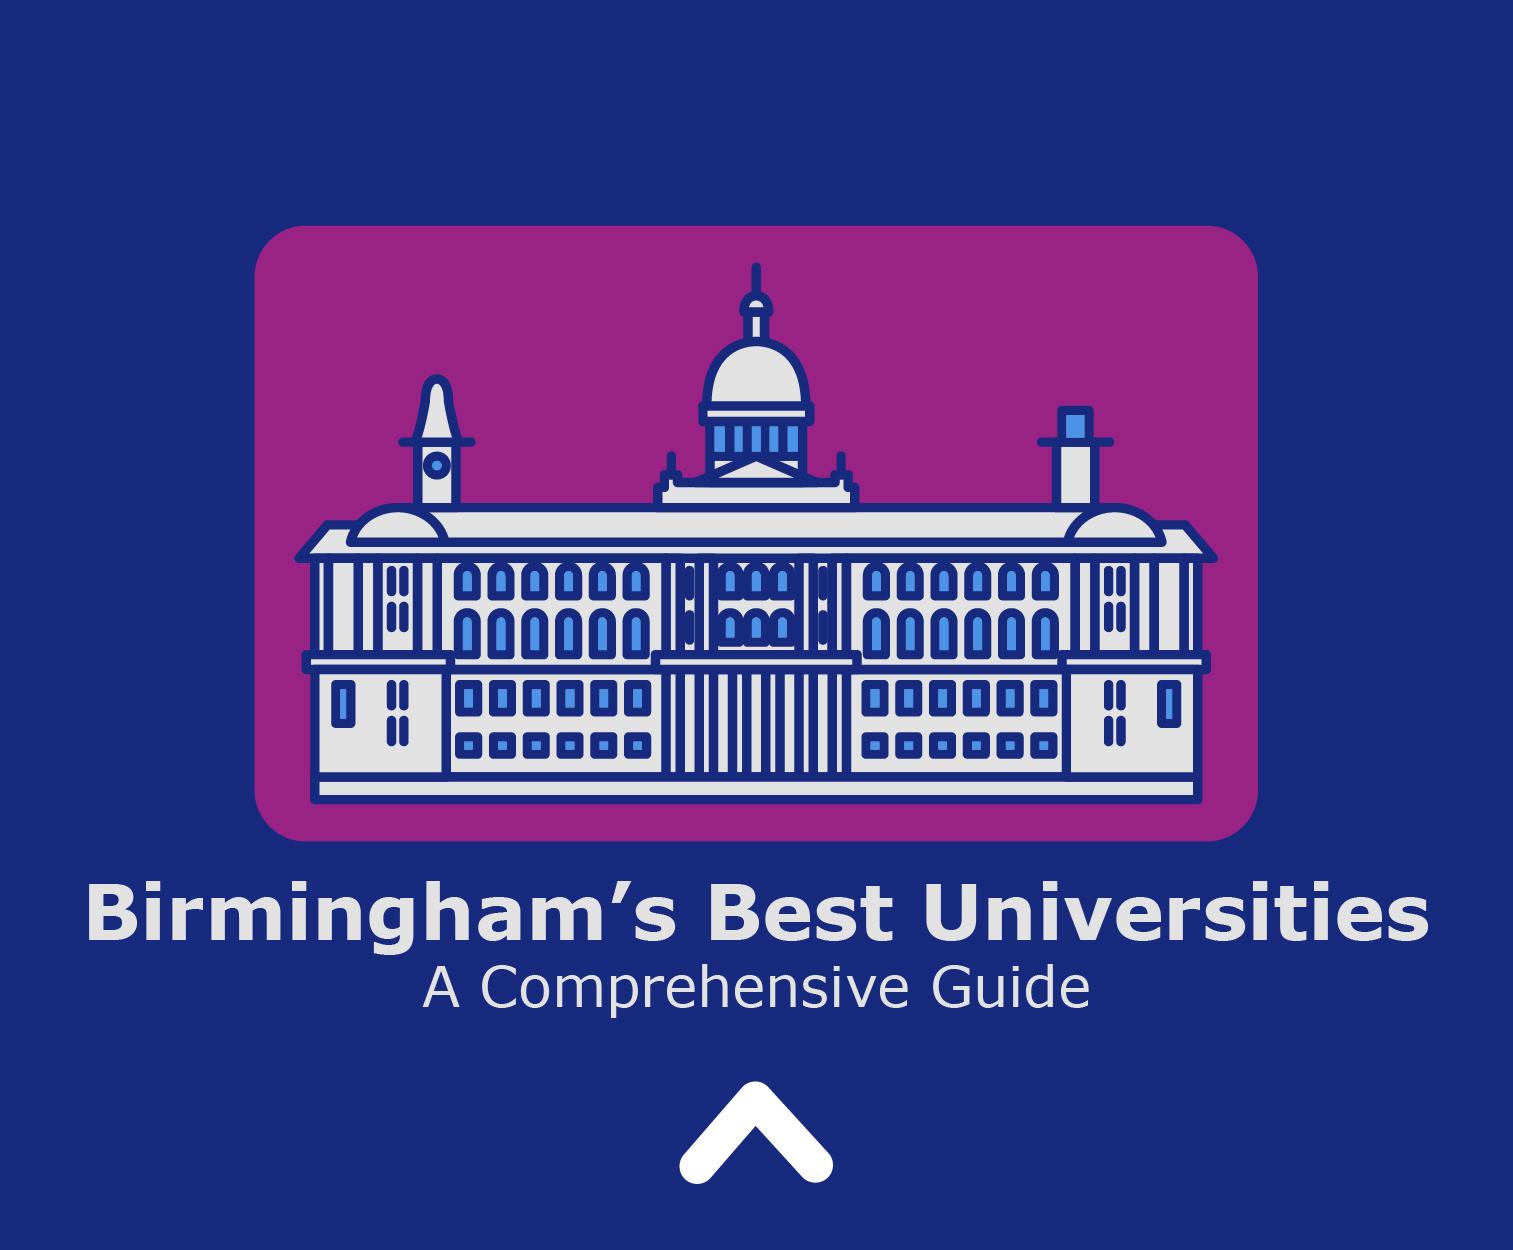 Birmingham’s Best Universities: A Comprehensive Guide